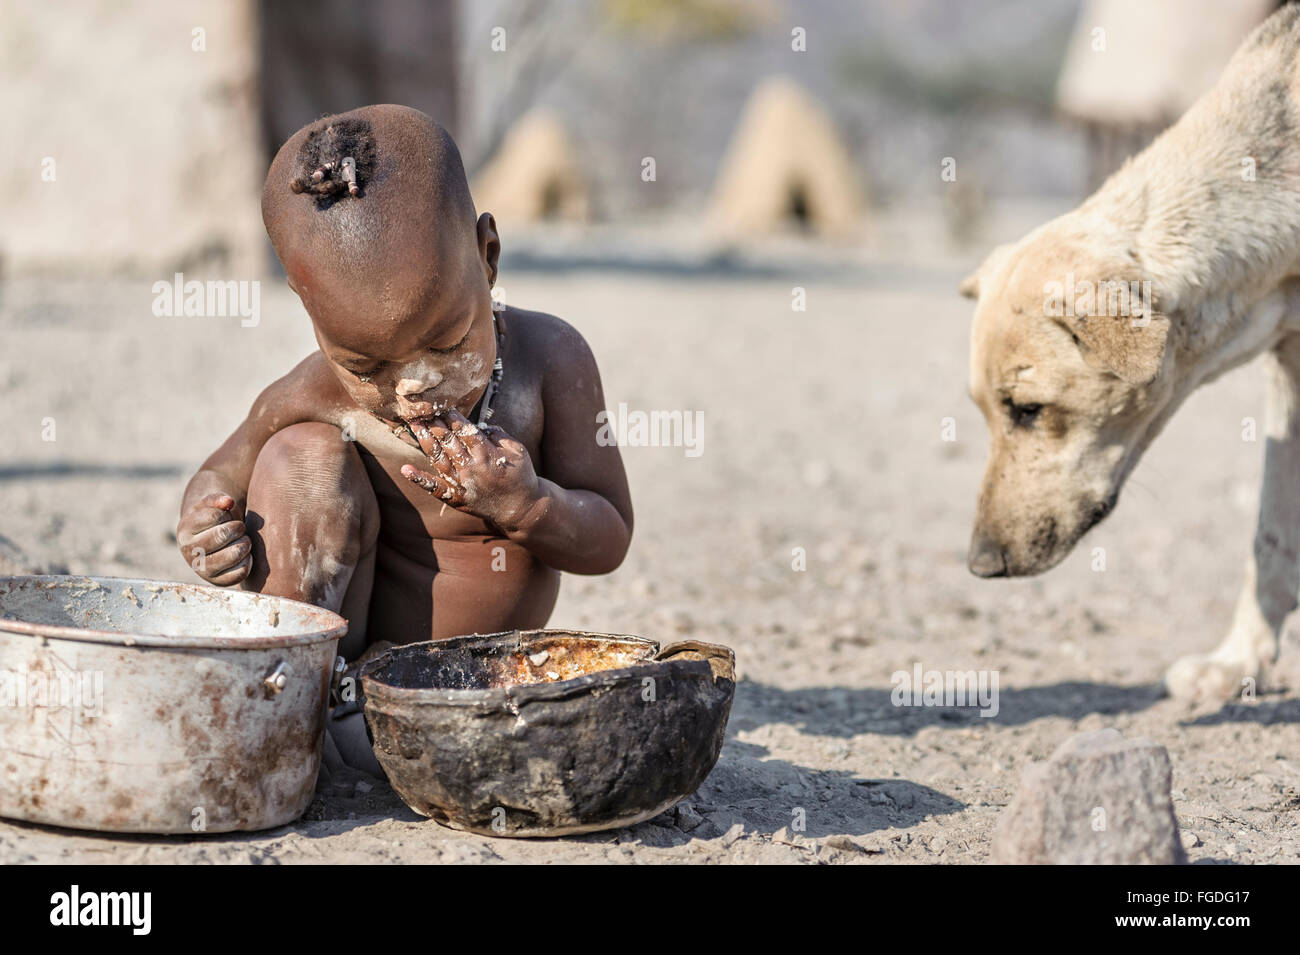 Enfant Himba assis sur le sol de son village éloigné de manger un pot rouillé tandis qu'un chien est à proximité de lui. Banque D'Images